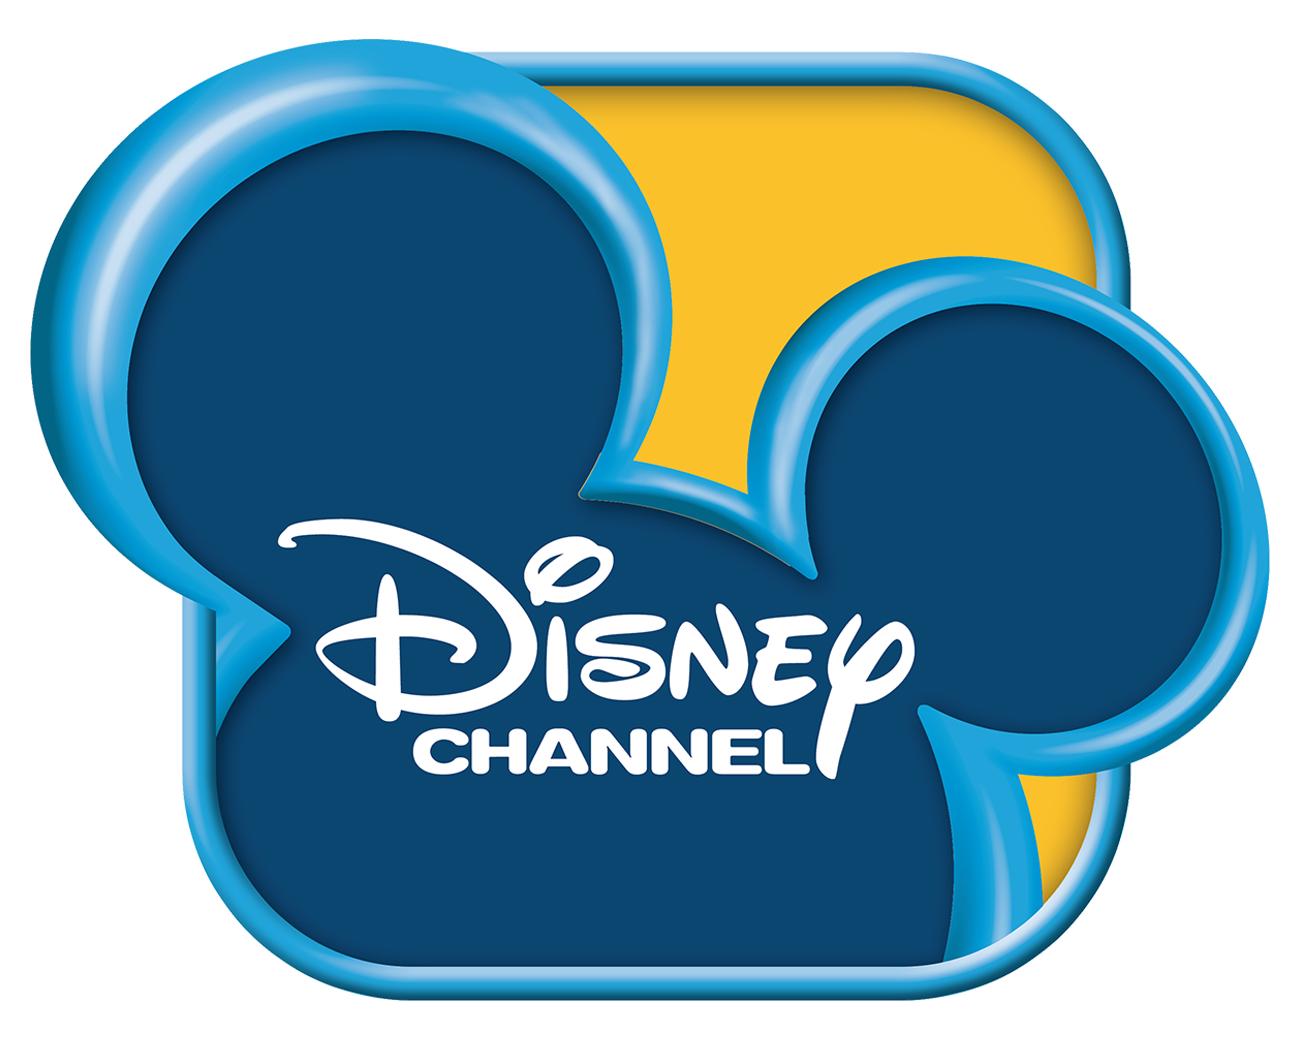 Quelle est cette série de Disney Channel ?